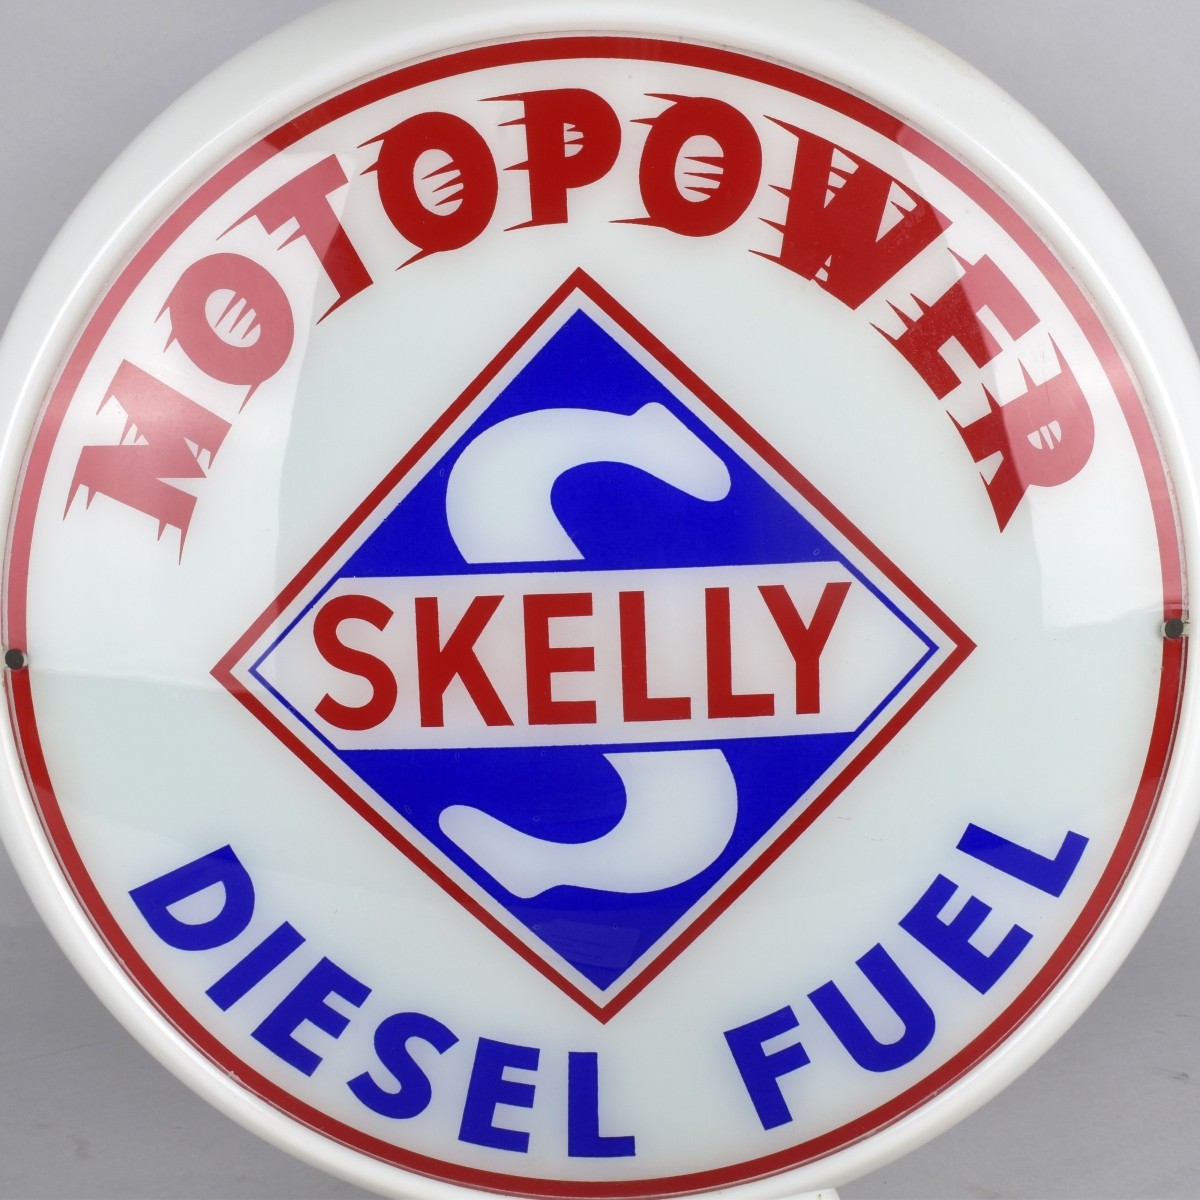 Vintage Skelly Diesel Fuel Advertising Globe